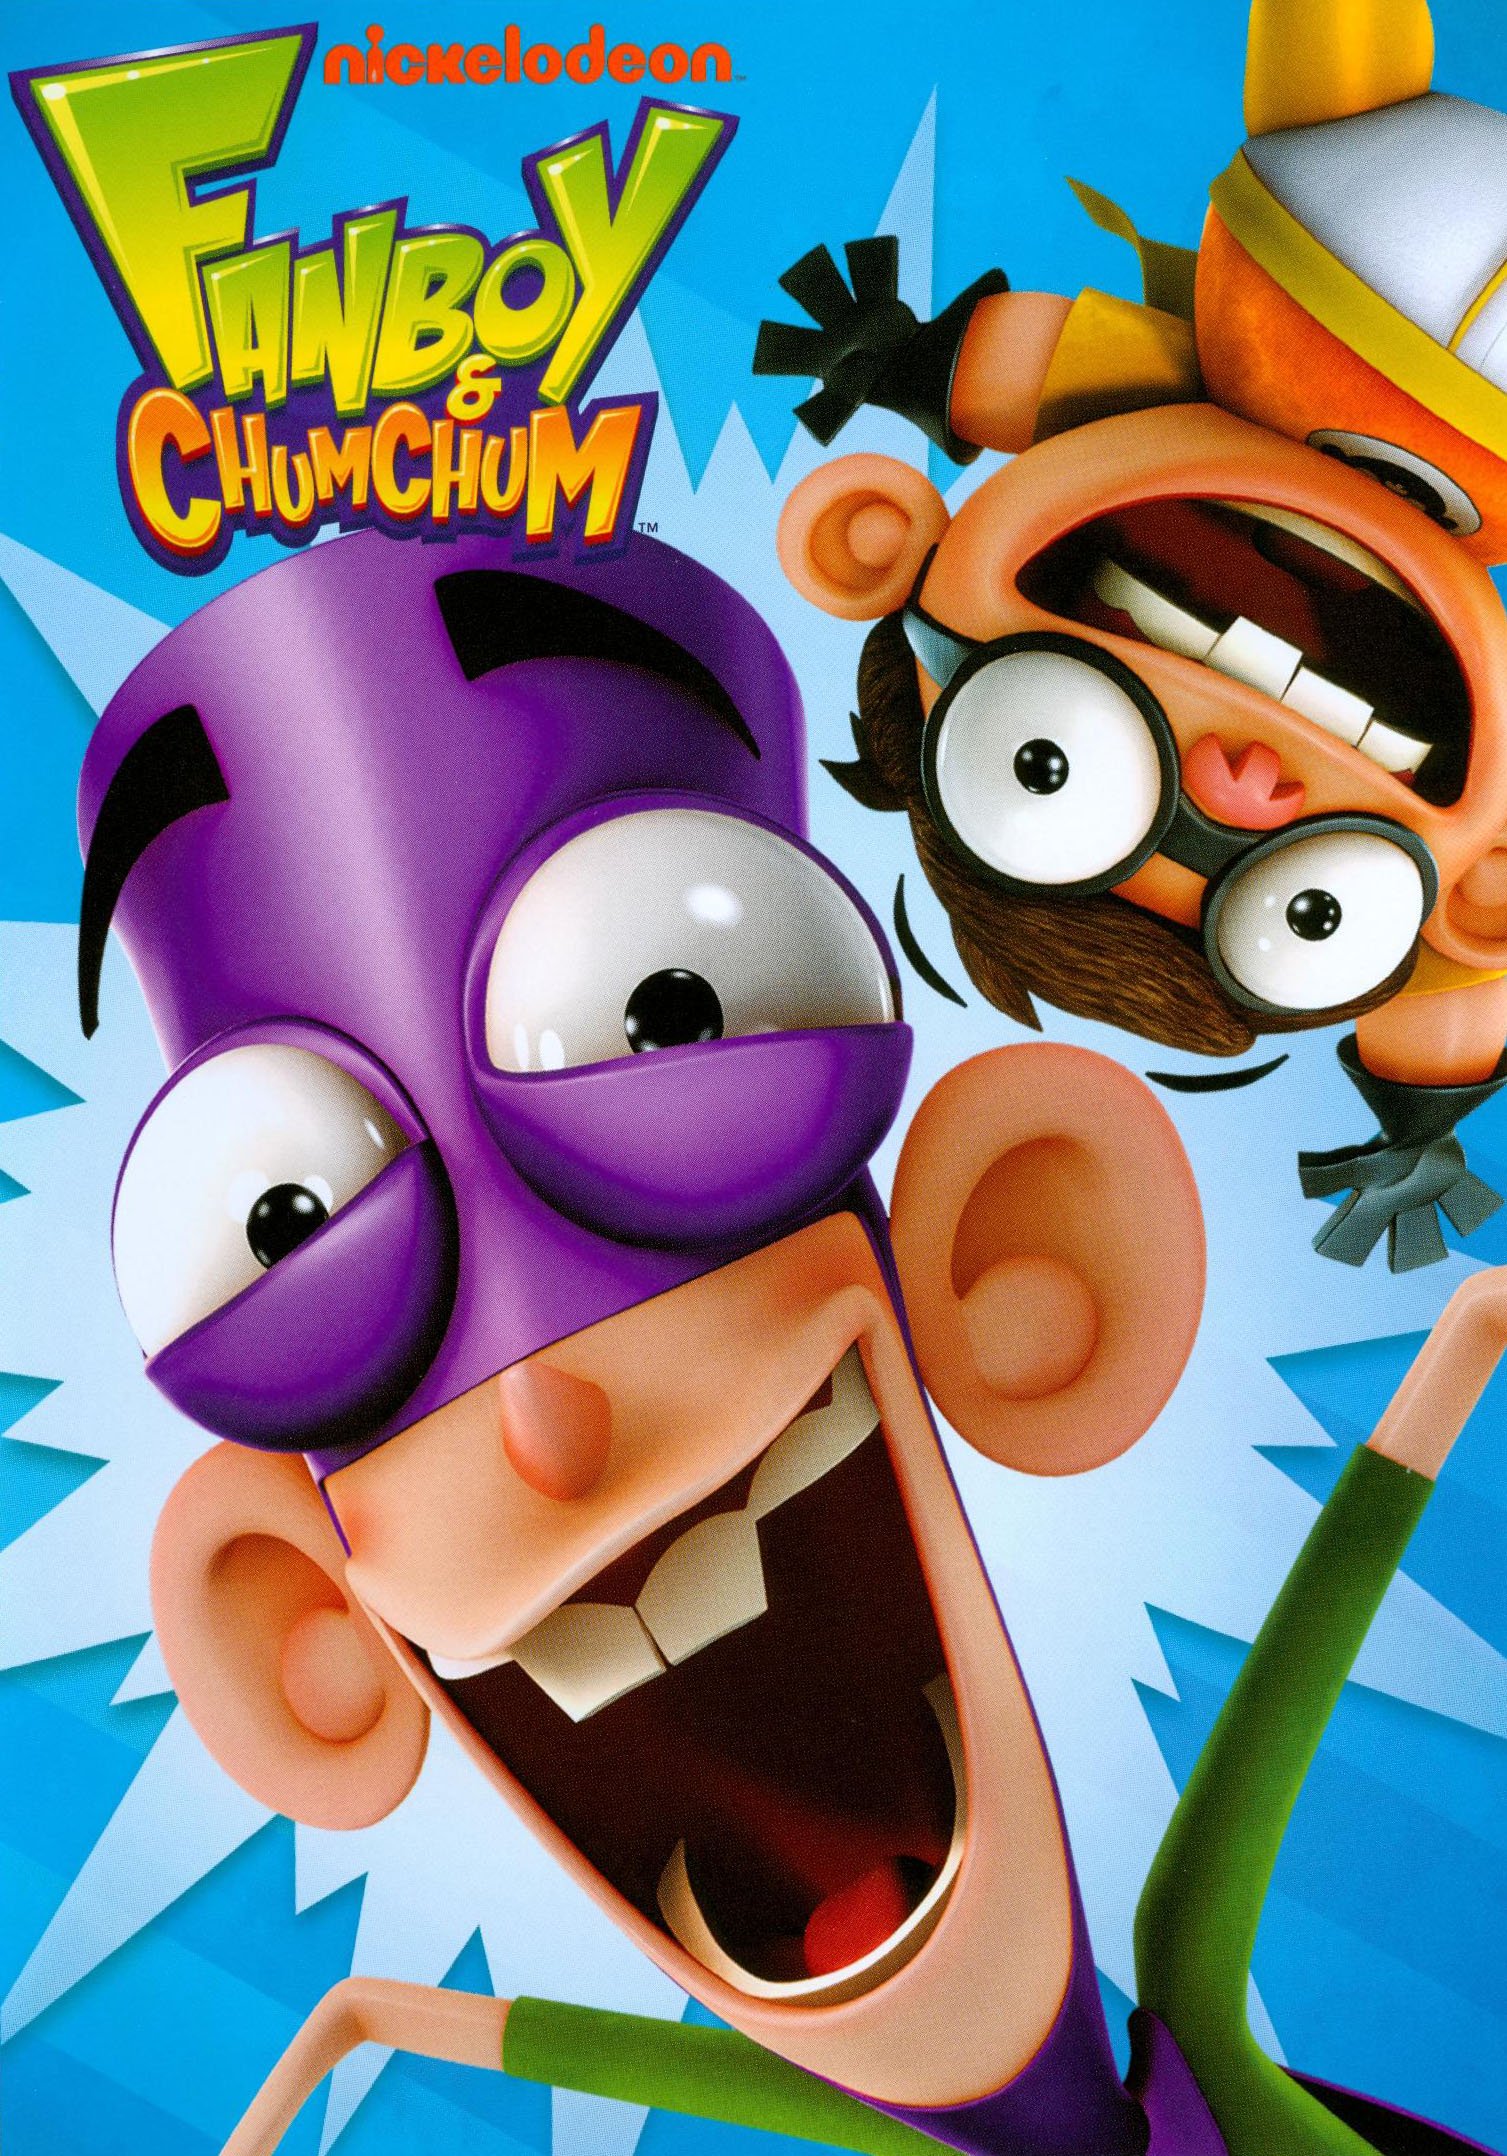 Best Buy: Fanboy & Chum Chum [DVD]